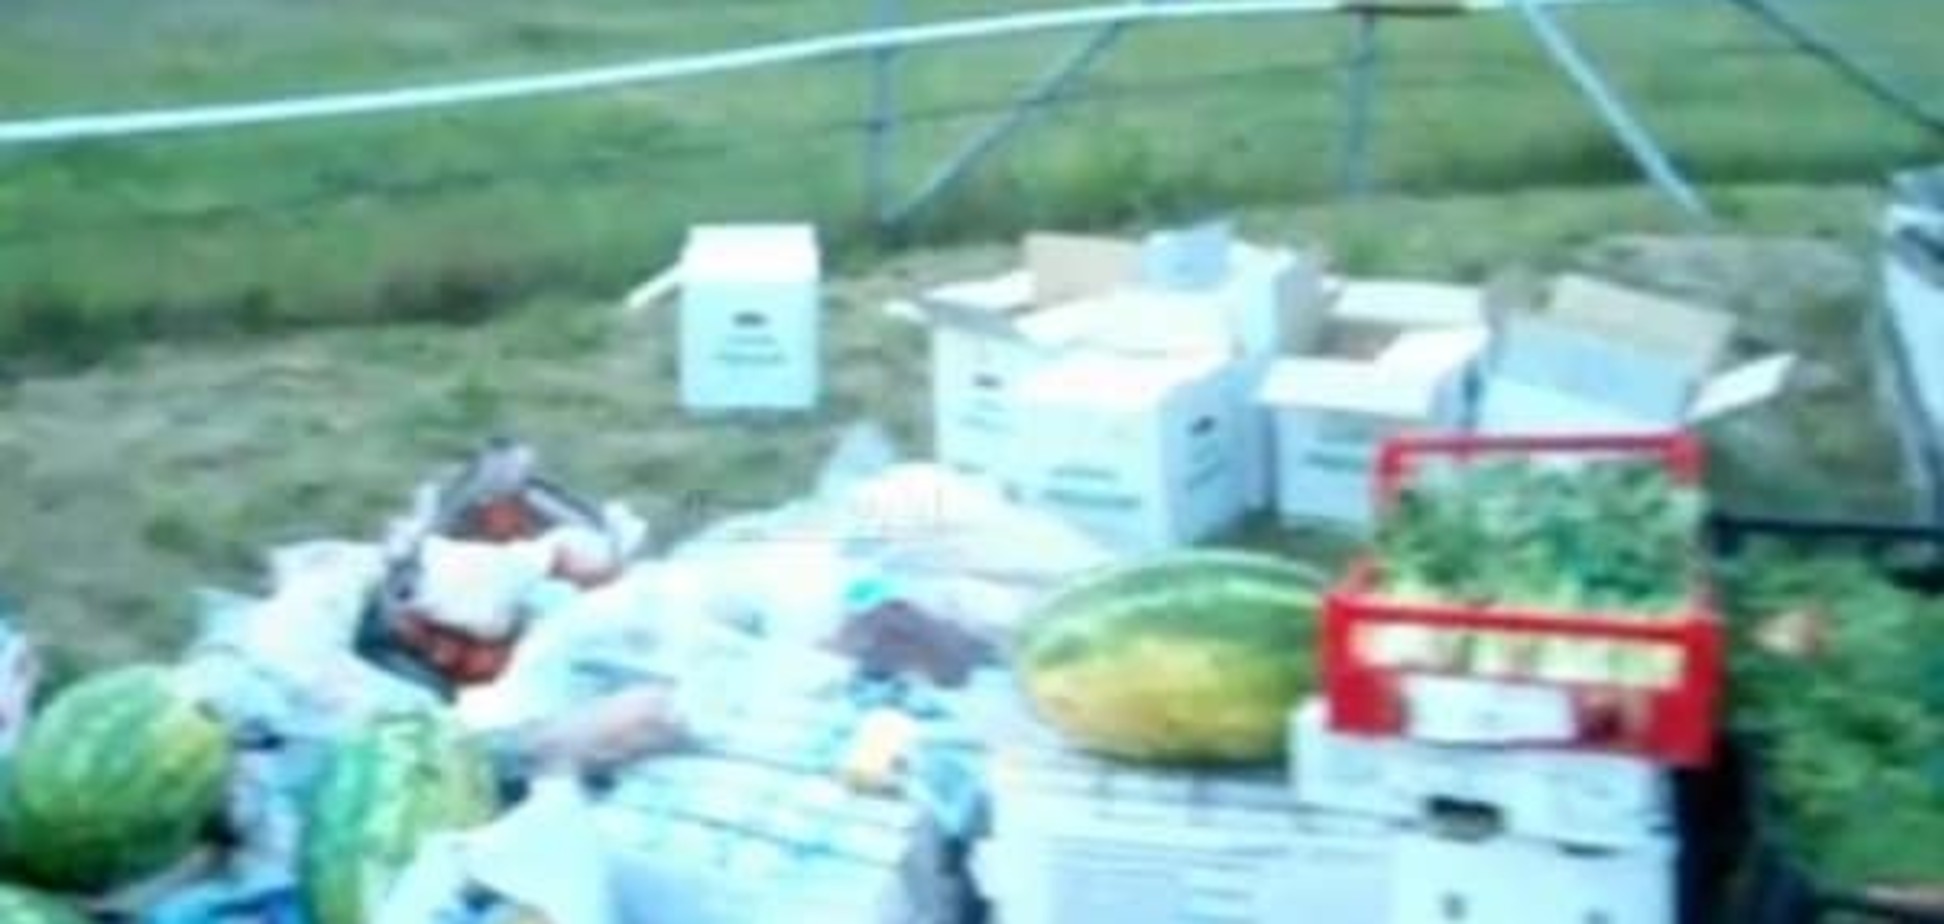 У гонщиков BMW на границе с Россией отобрали и уничтожили еду 